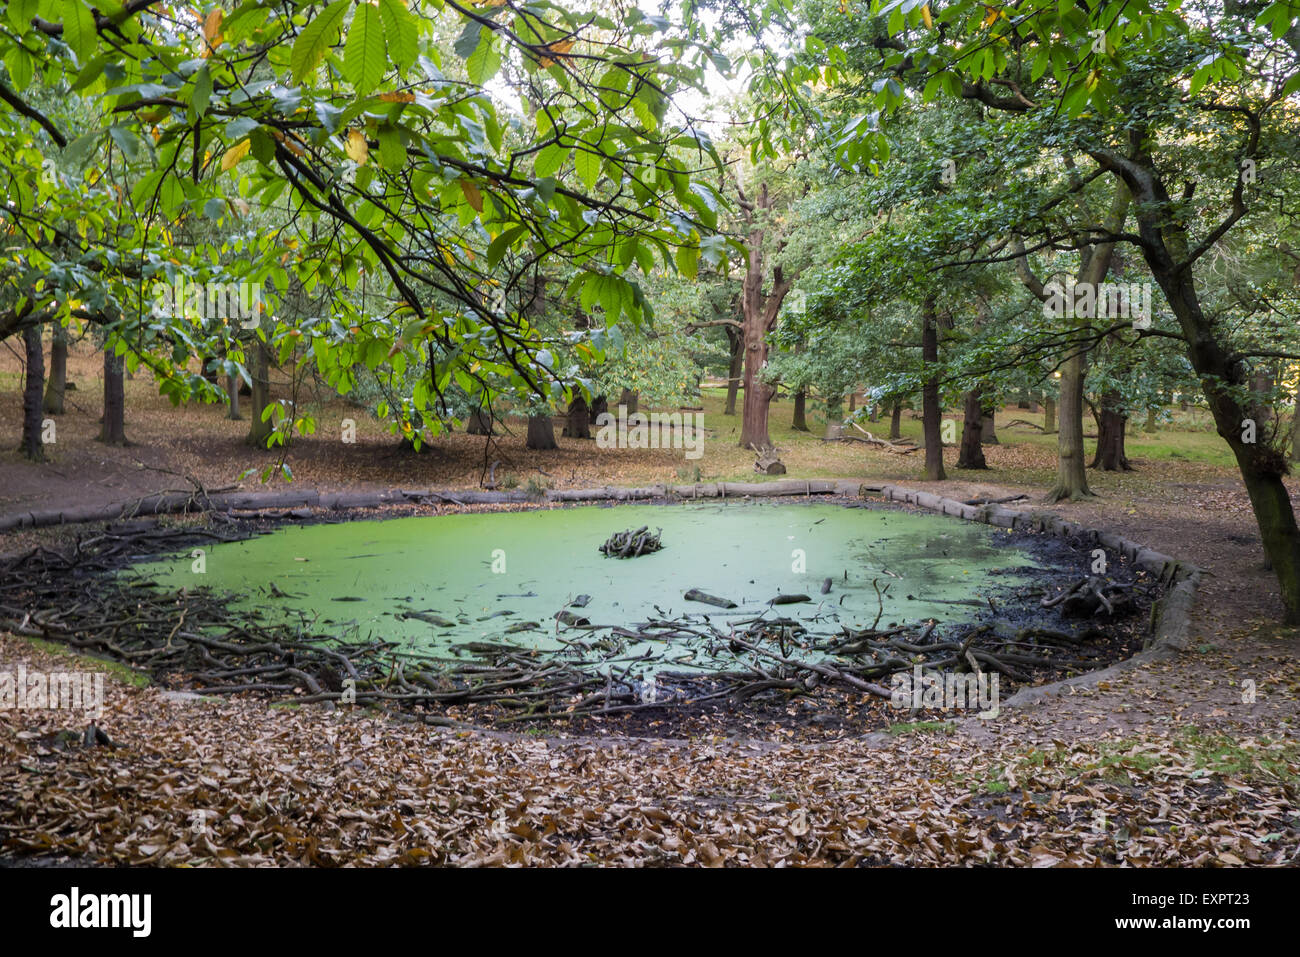 Richmond Park, London, Regno Unito. stagno con un basso livello di acqua, coperte di alghe verdi con rami morti. Foto Stock